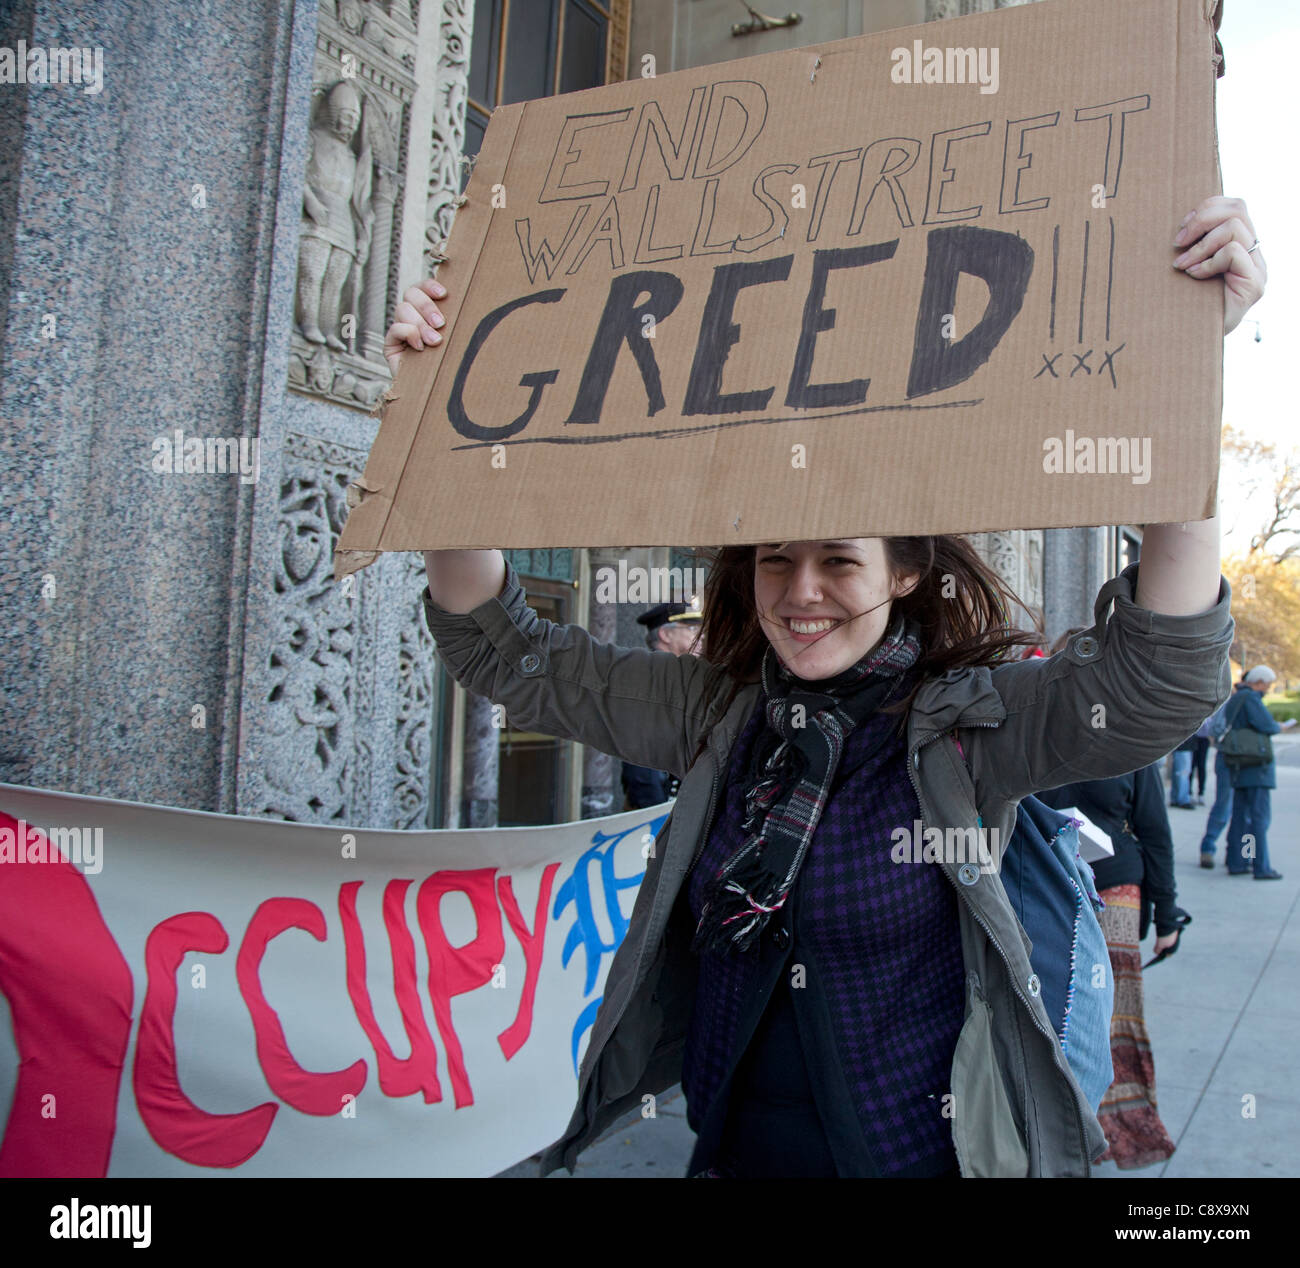 Detroit, Michigan - Mitglieder von Occupy Detroit Streikposten einen Auftritt von Duncan Niederauer, CEO der New York Stock Exchange und ehemaliger Goldman Sachs Partner. Sie Gruppe hieß Niederauer "einen Chef Schuldigen" für die aktuelle Finanzkrise verantwortlich. Stockfoto